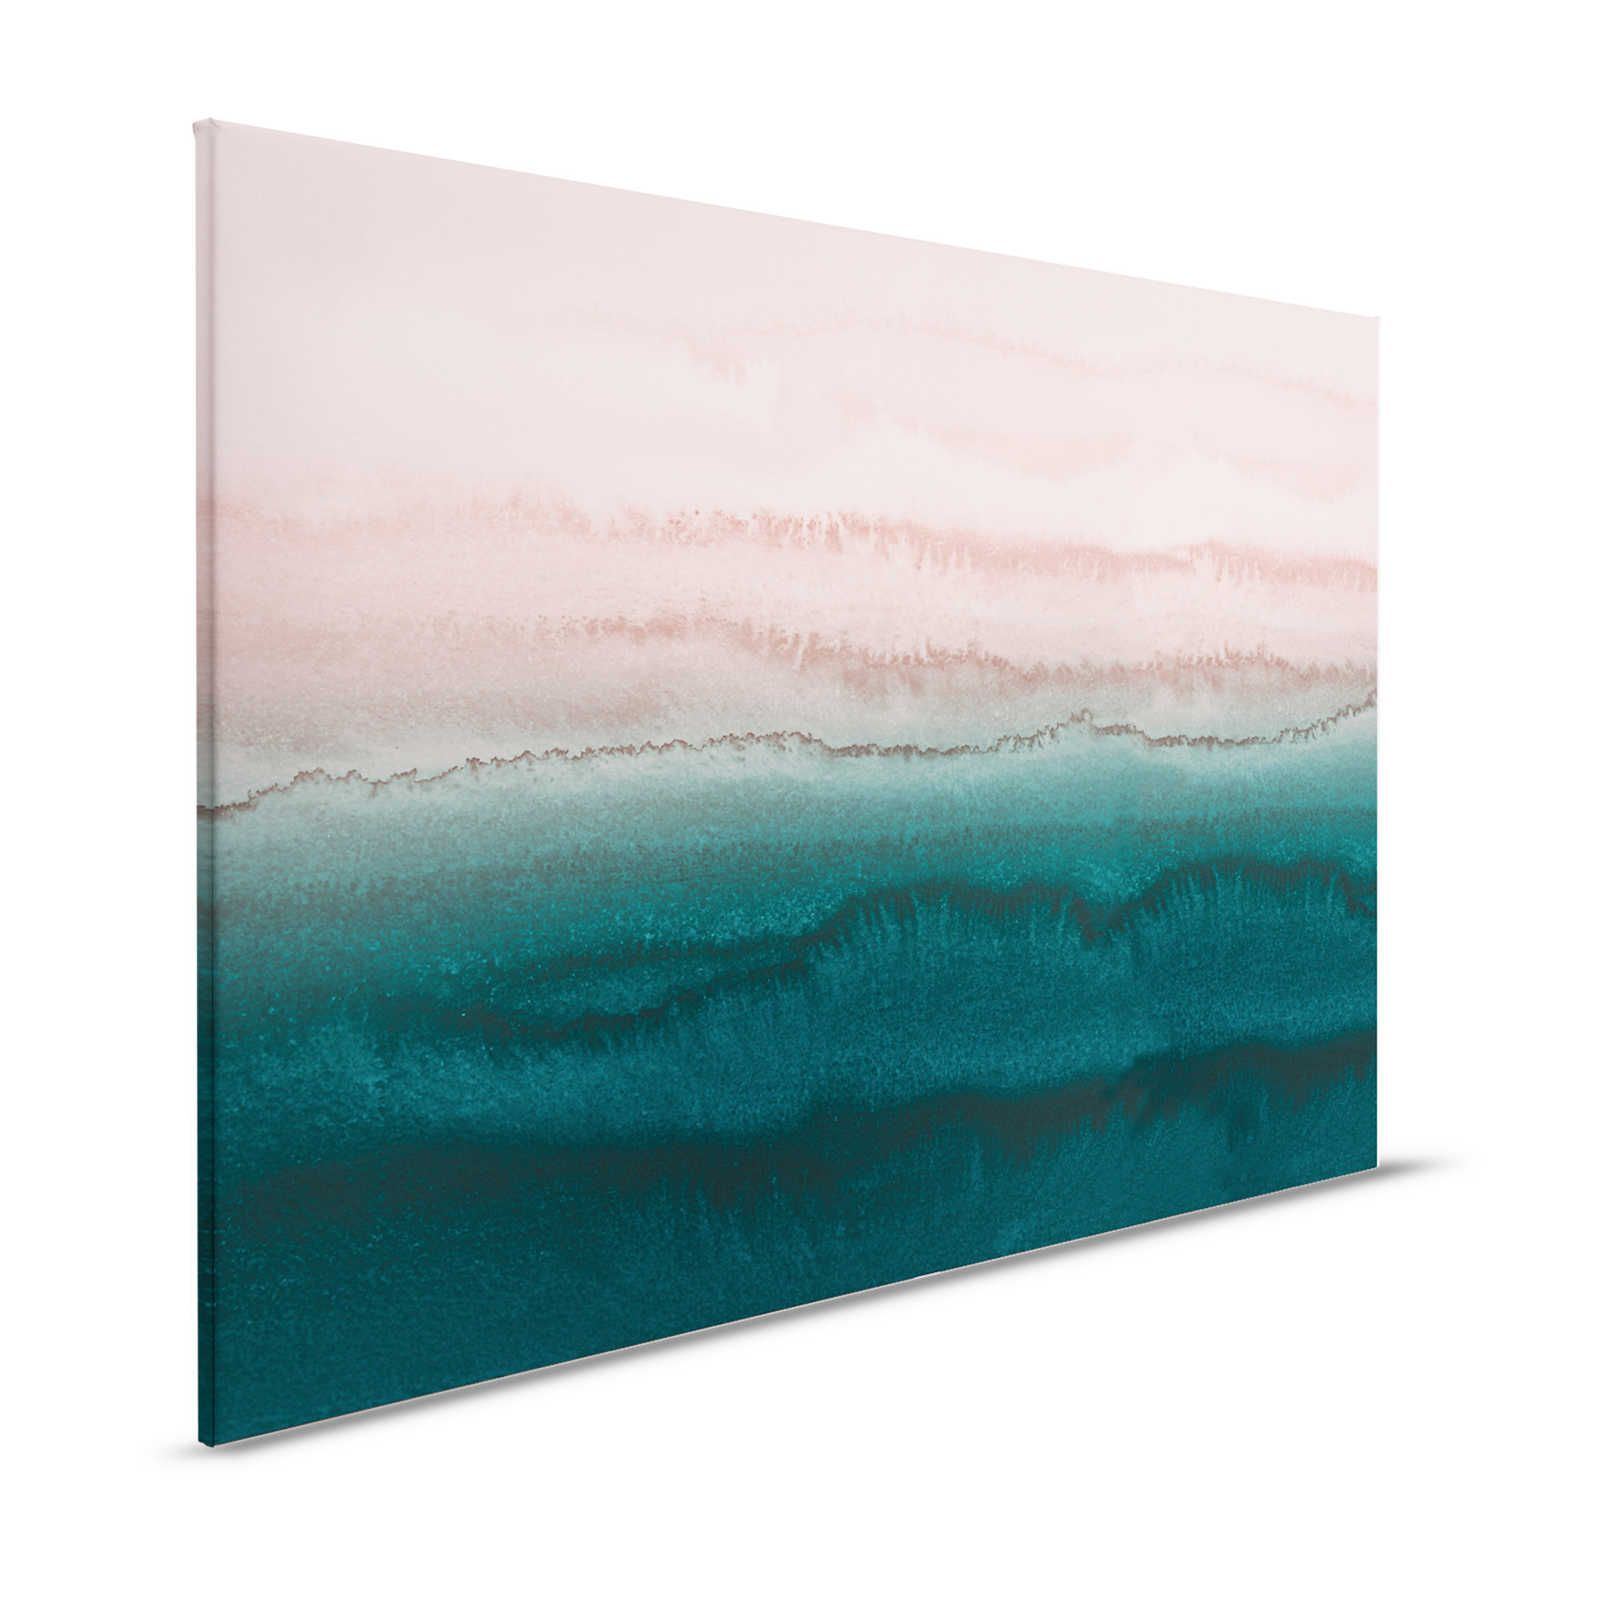 Gezeiten Leinwandbild mit abstraktem Wasser Aquarell – 1,20 m x 0,80 m
